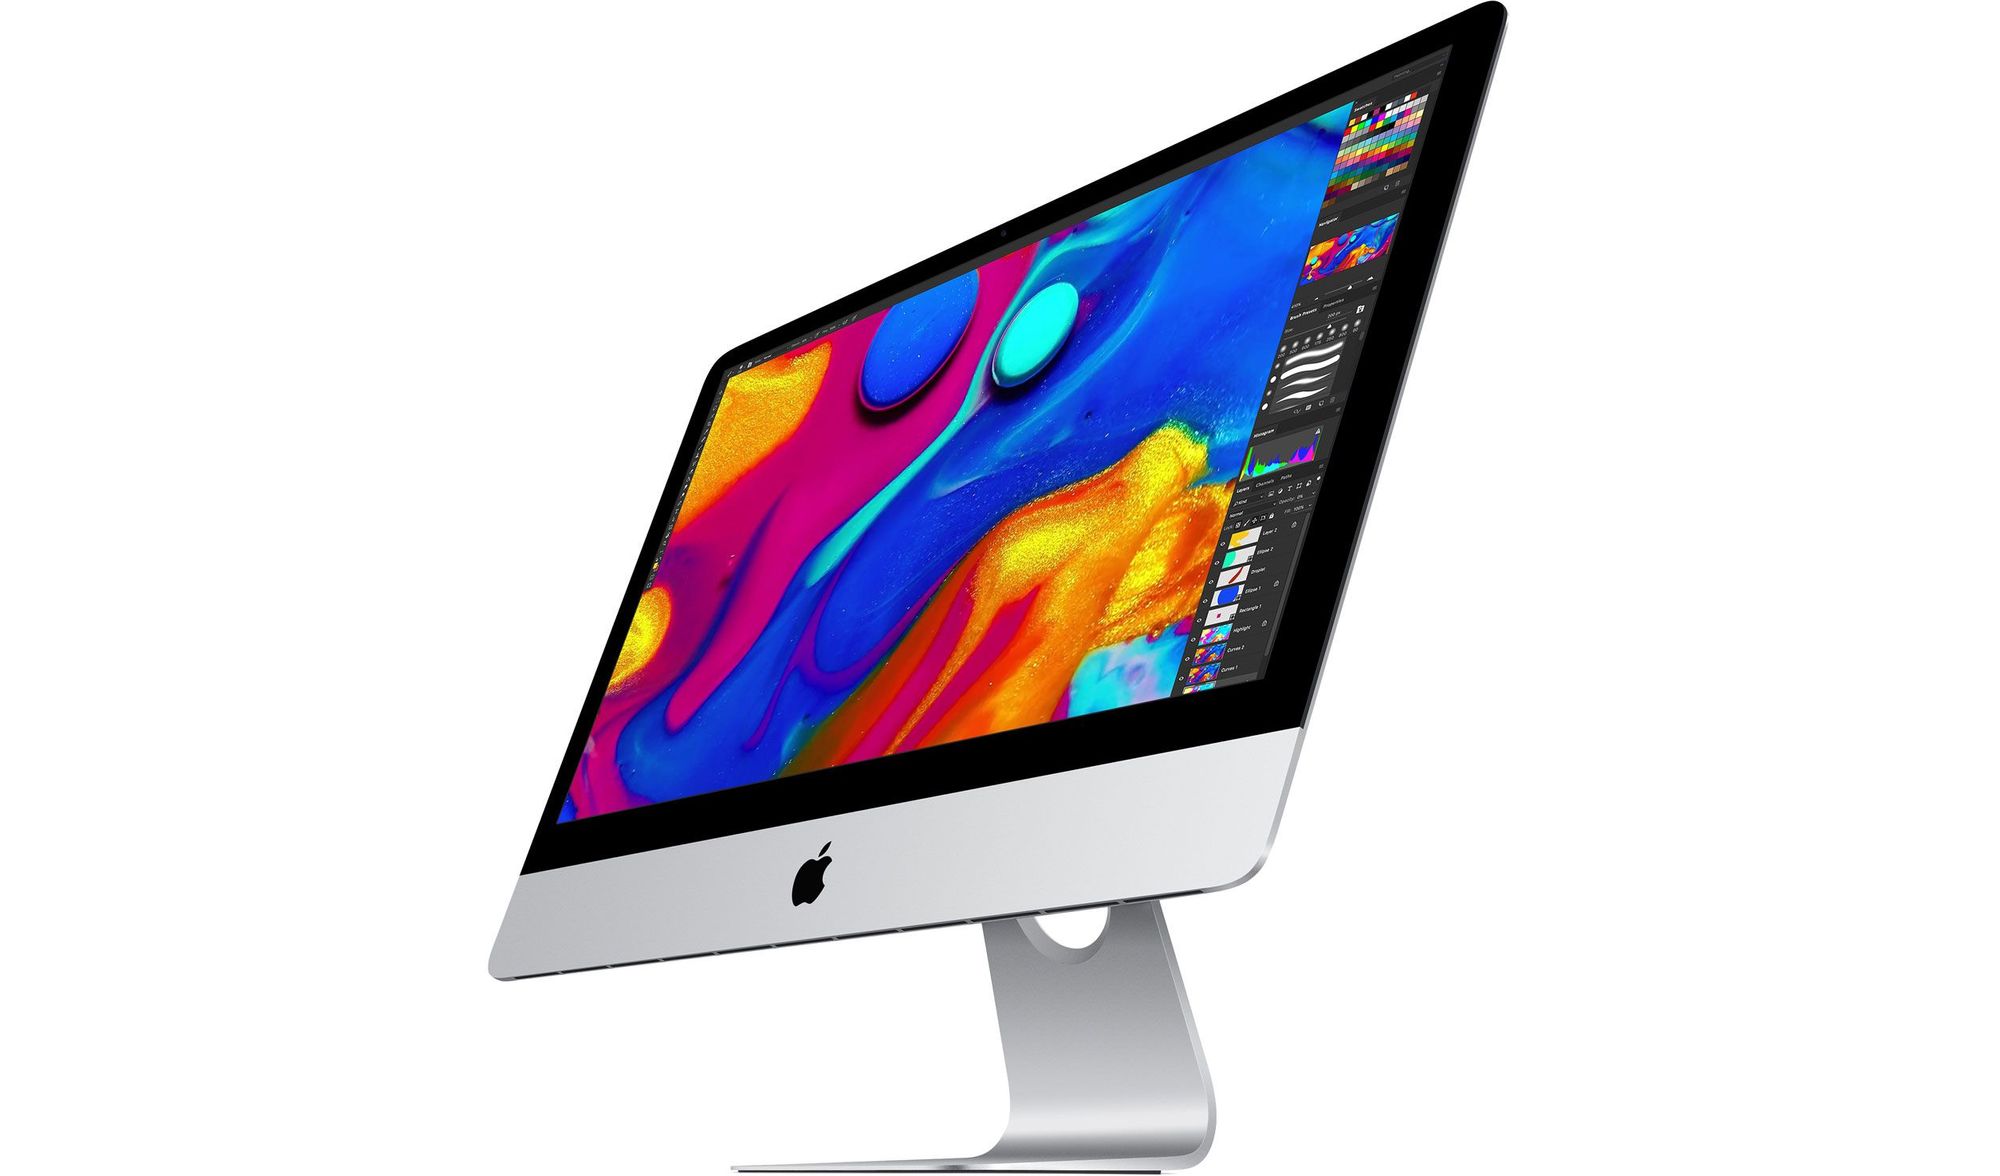 Apple descontinua duas configurações do iMac 4K de 21,5” com novo modelo a caminho